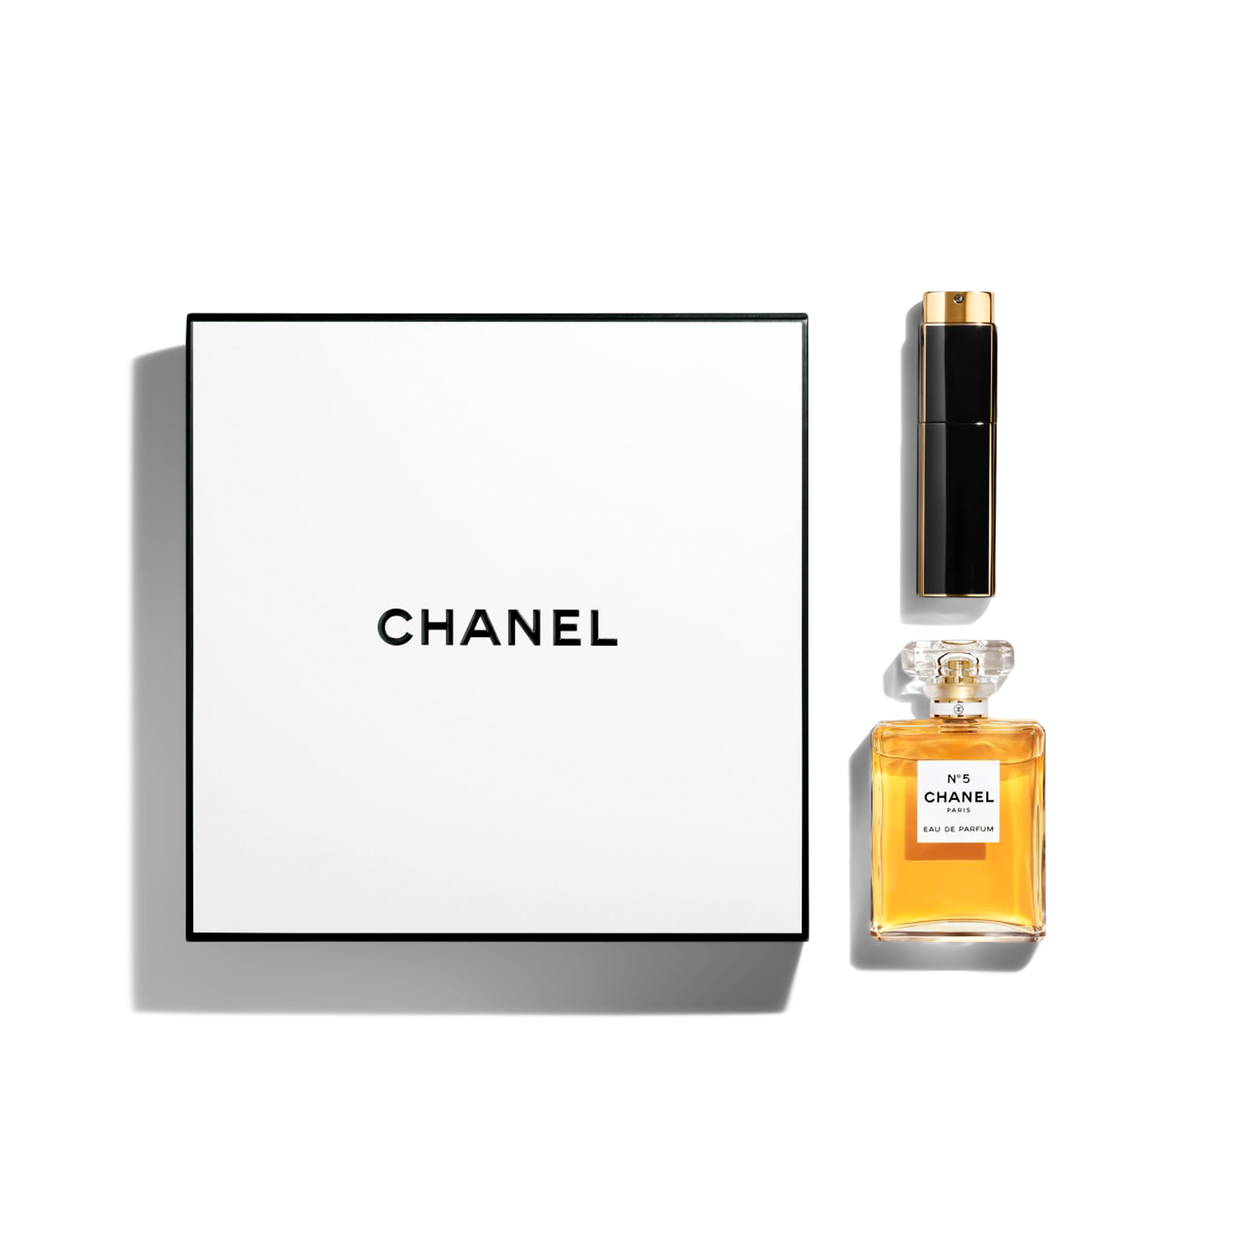 Unboxing Chanel No. 5 twist & spray eau de parfum. Chanel No. 5